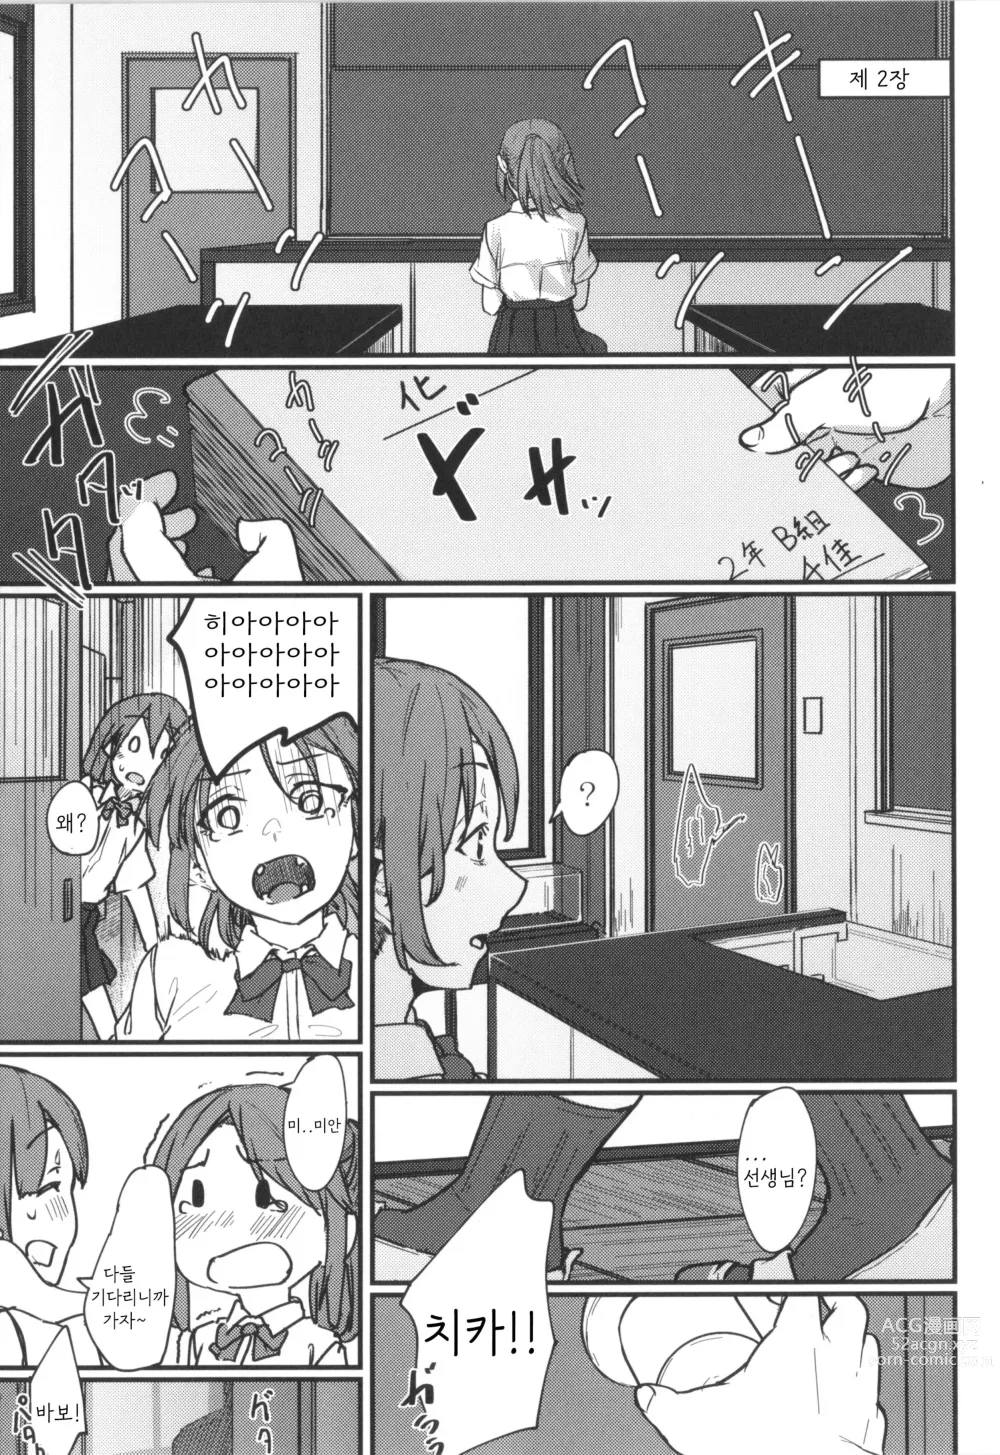 Page 25 of manga Hatsukoi no Hito